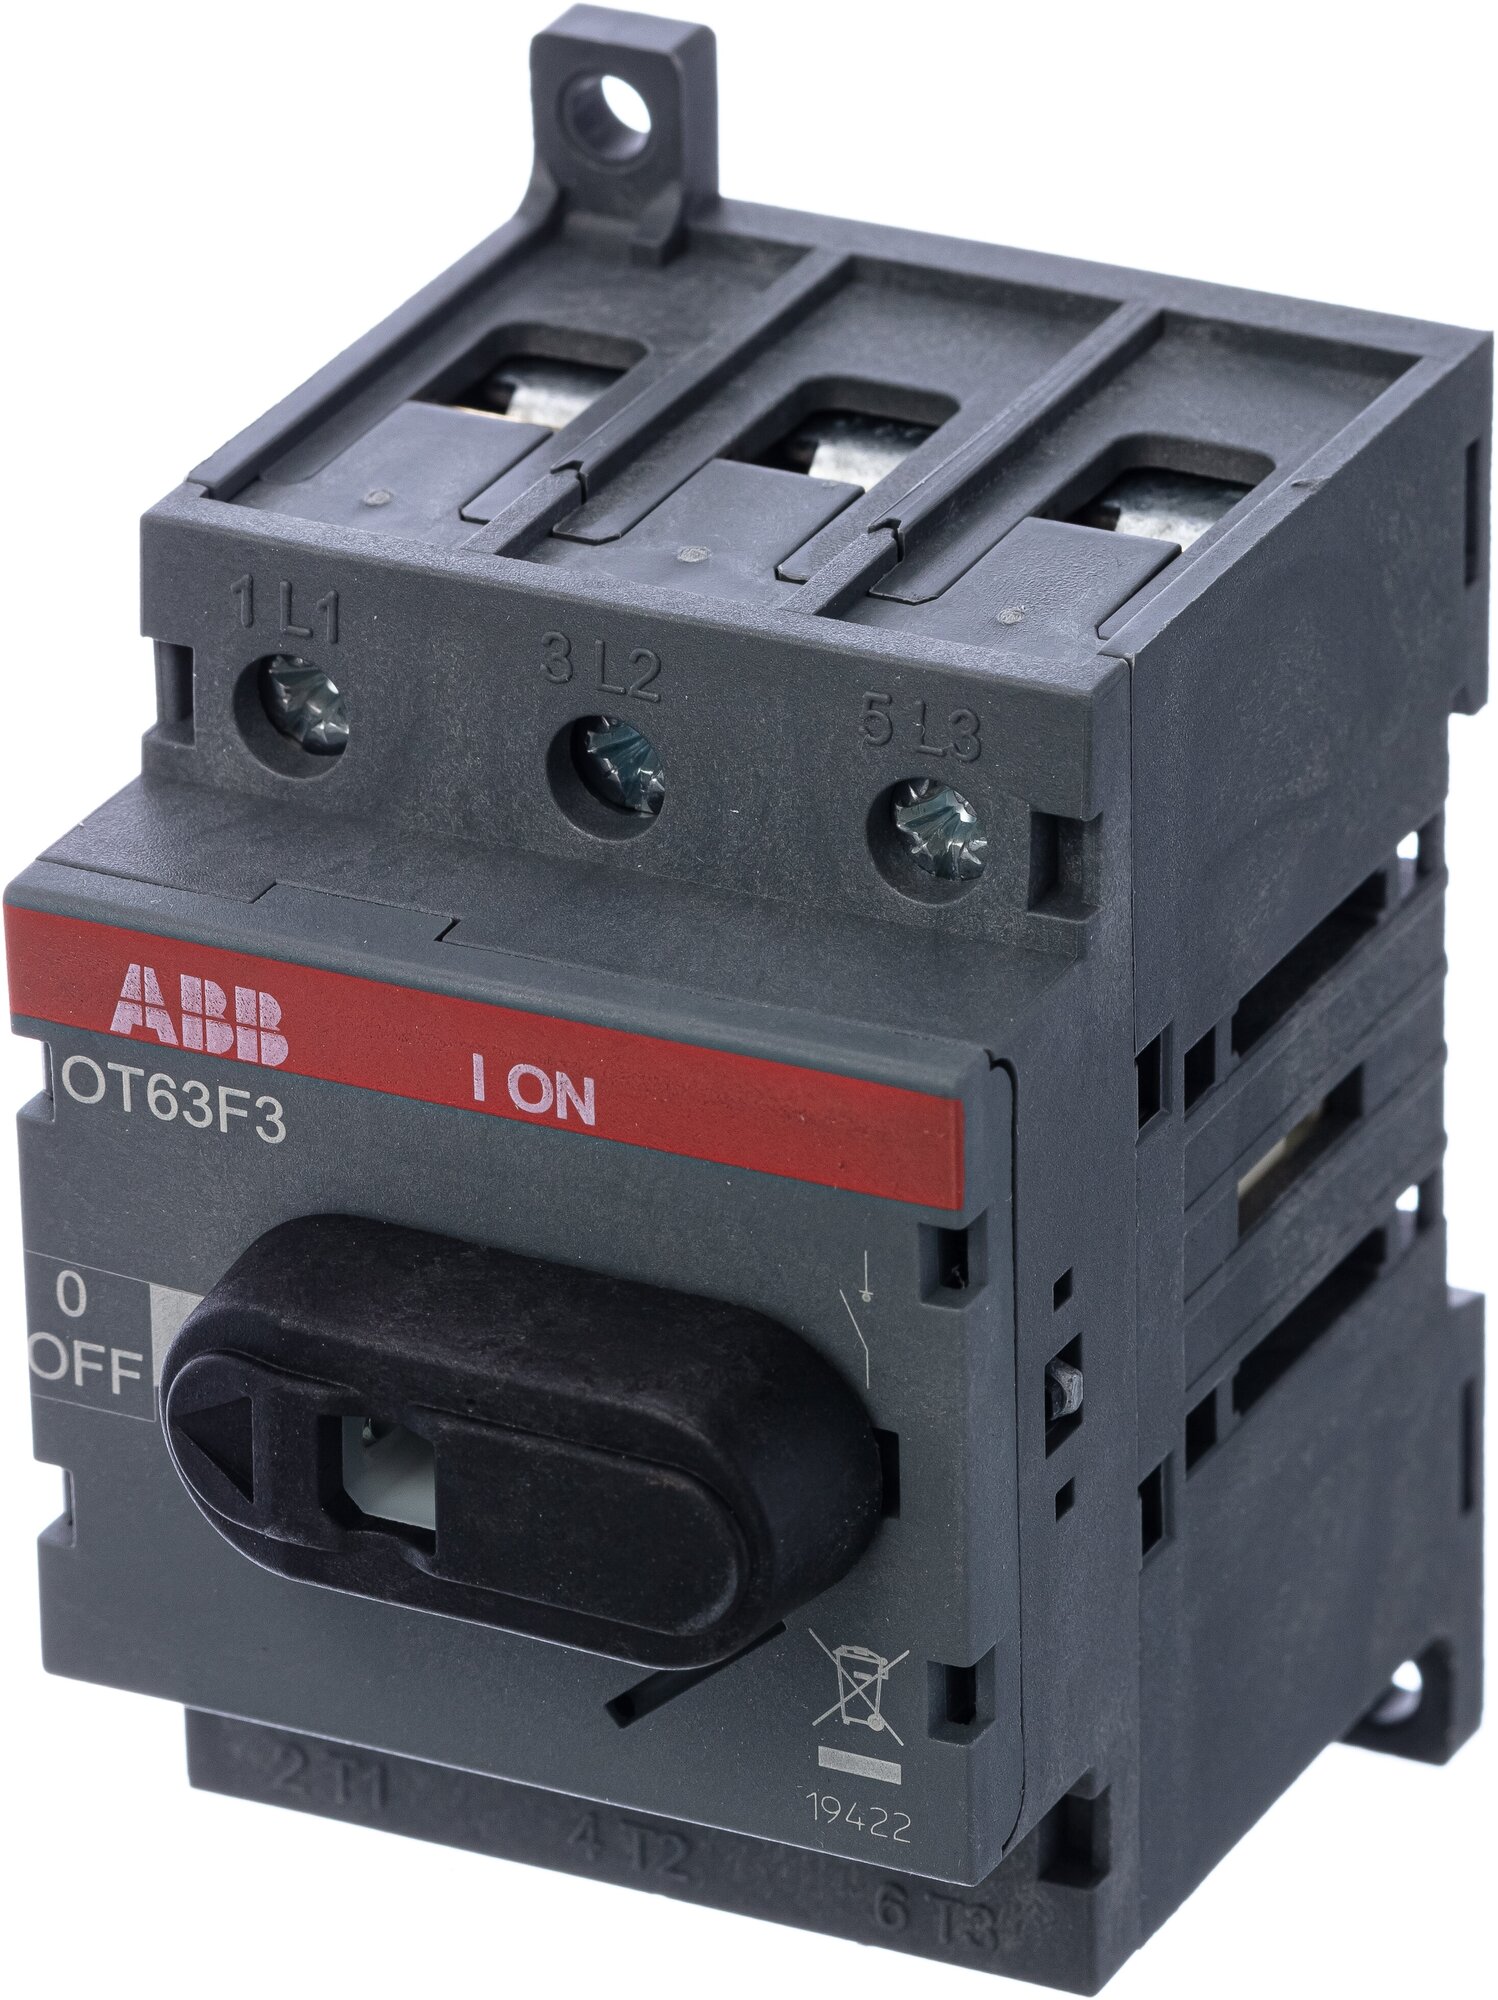 Рубильник ABB OT63F3 до 63 Ампер, 3-полюсный выключатель нагрузки